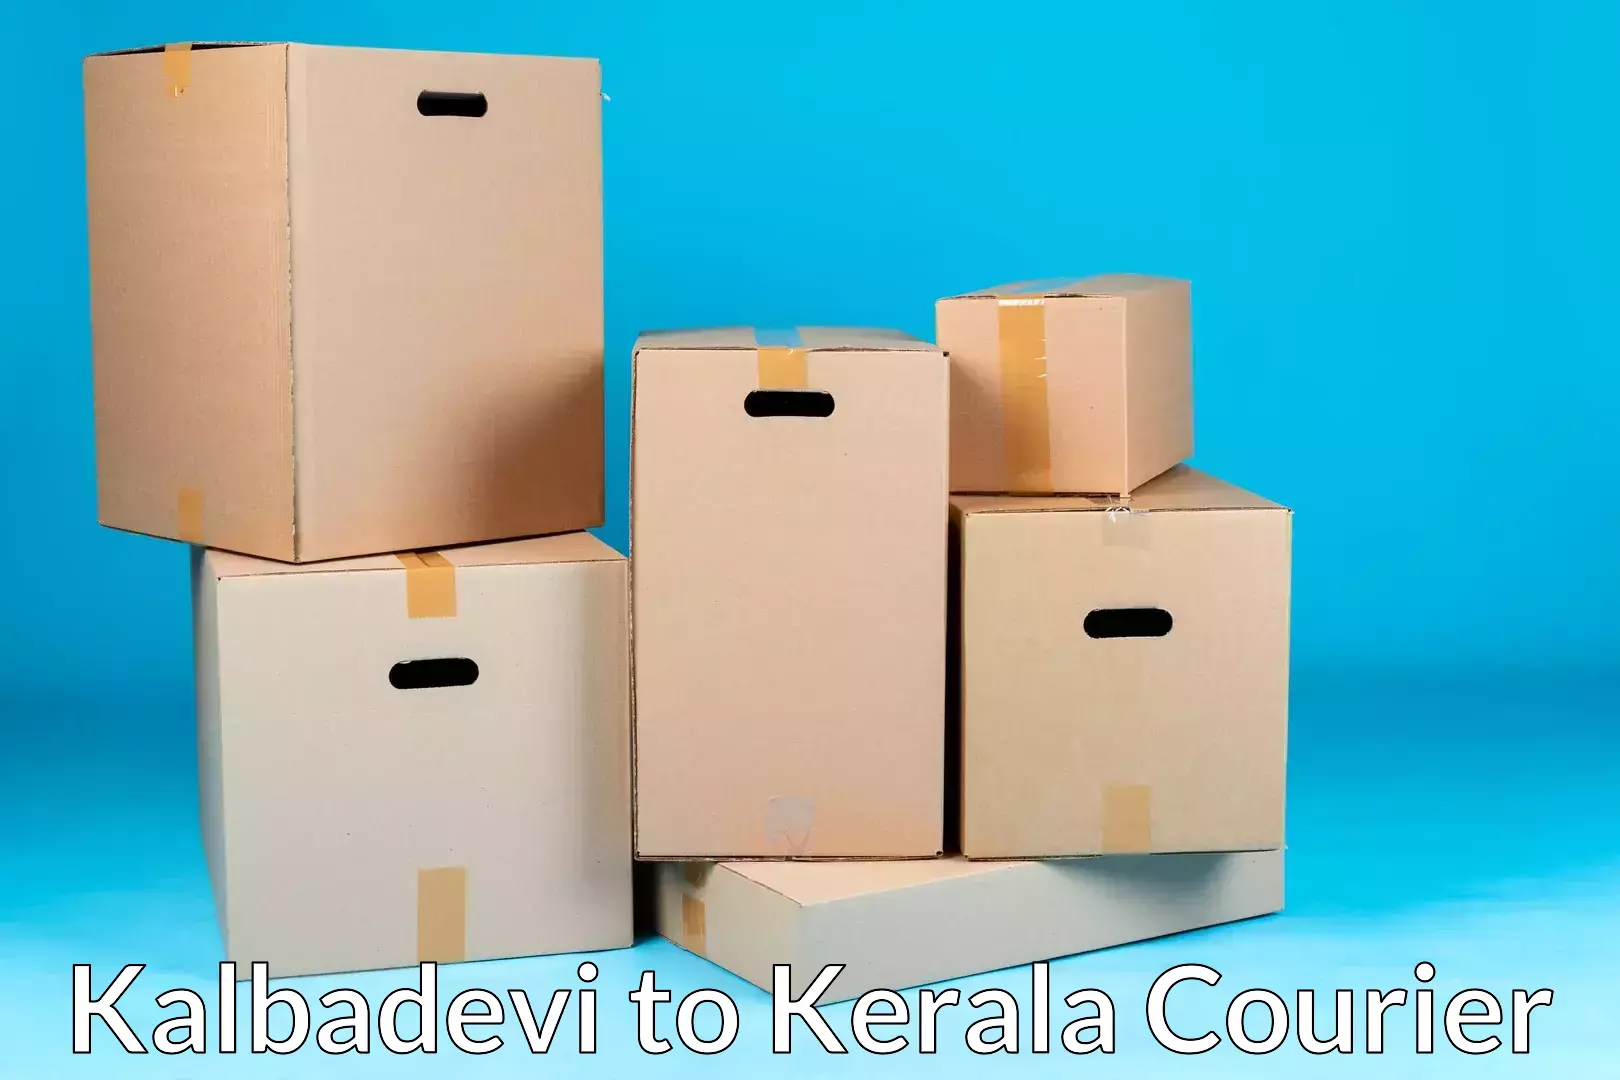 Residential furniture transport Kalbadevi to Kochi